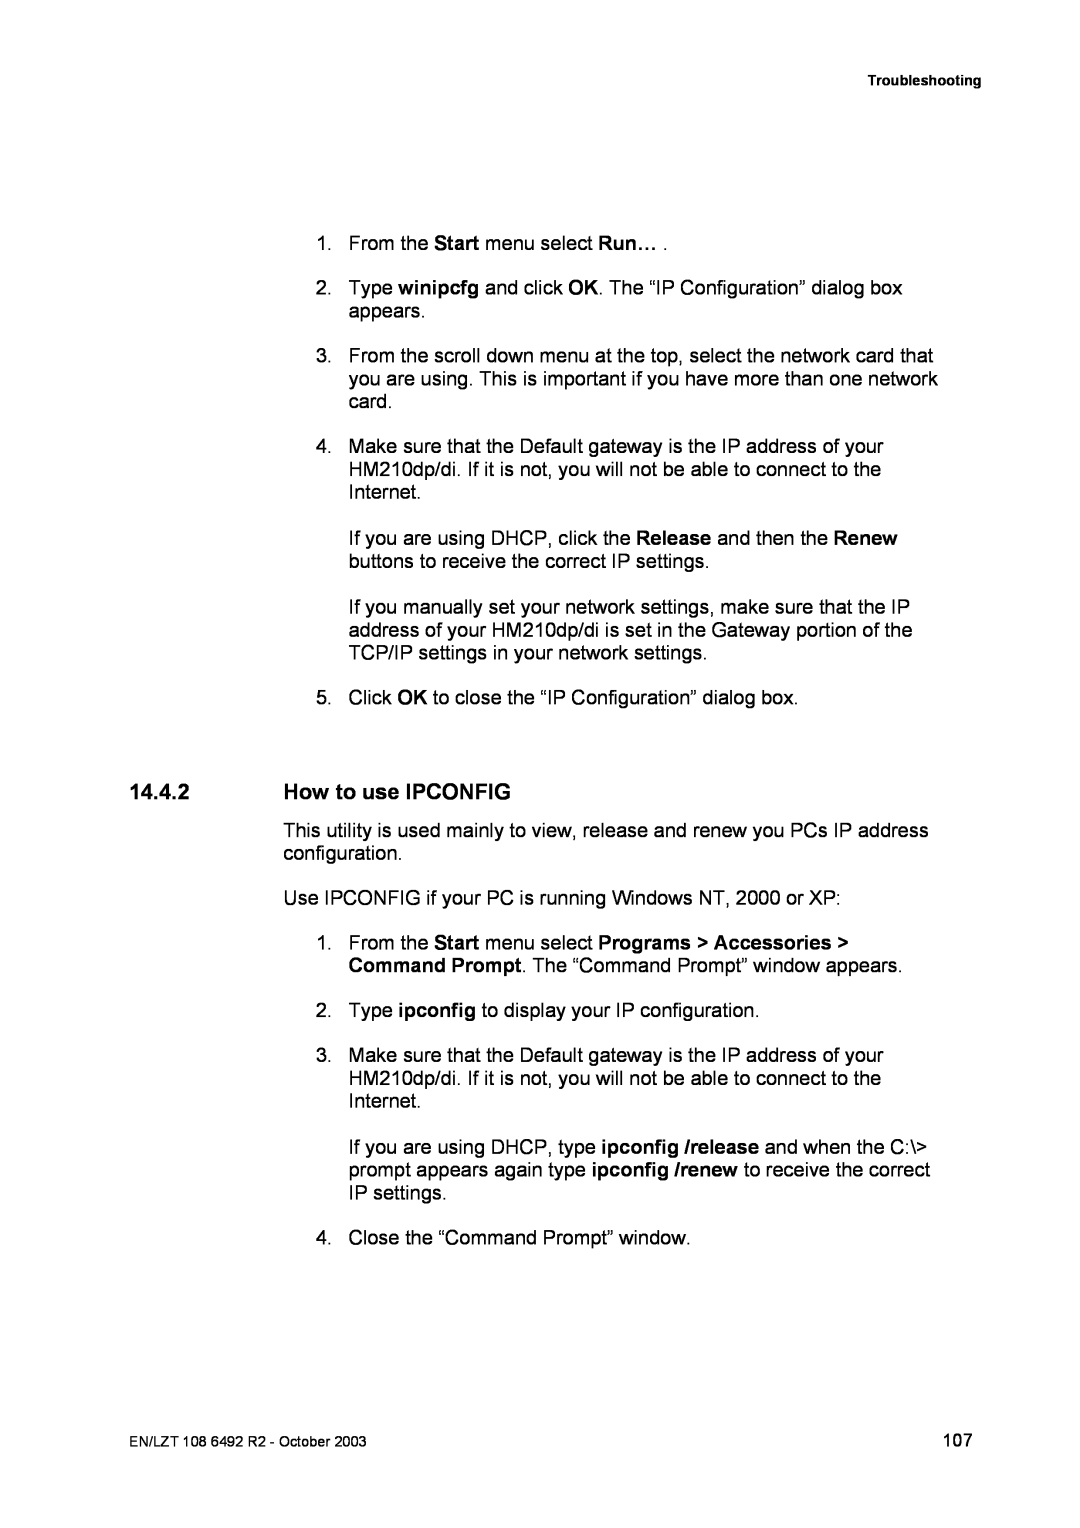 Garmin HM210DP/DI manual How to use IPCONFIG 